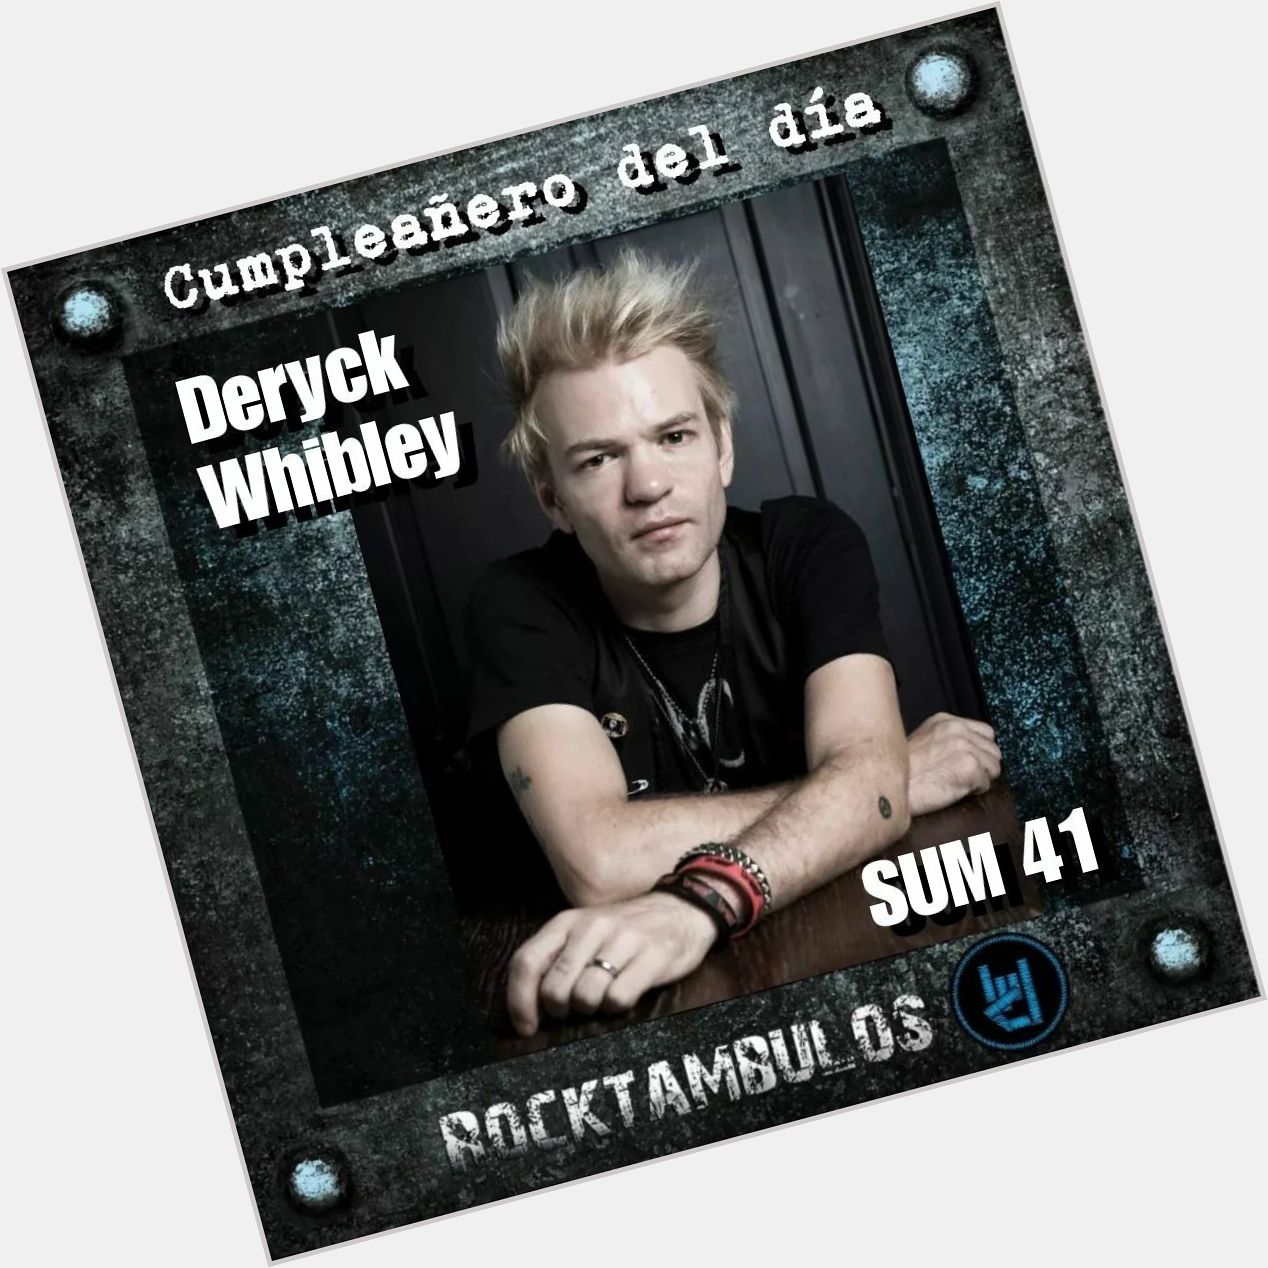 El gran Deryck Whibley, líder de Sum 41, está cumpliendo 42 años Happy birthday Deryck! 